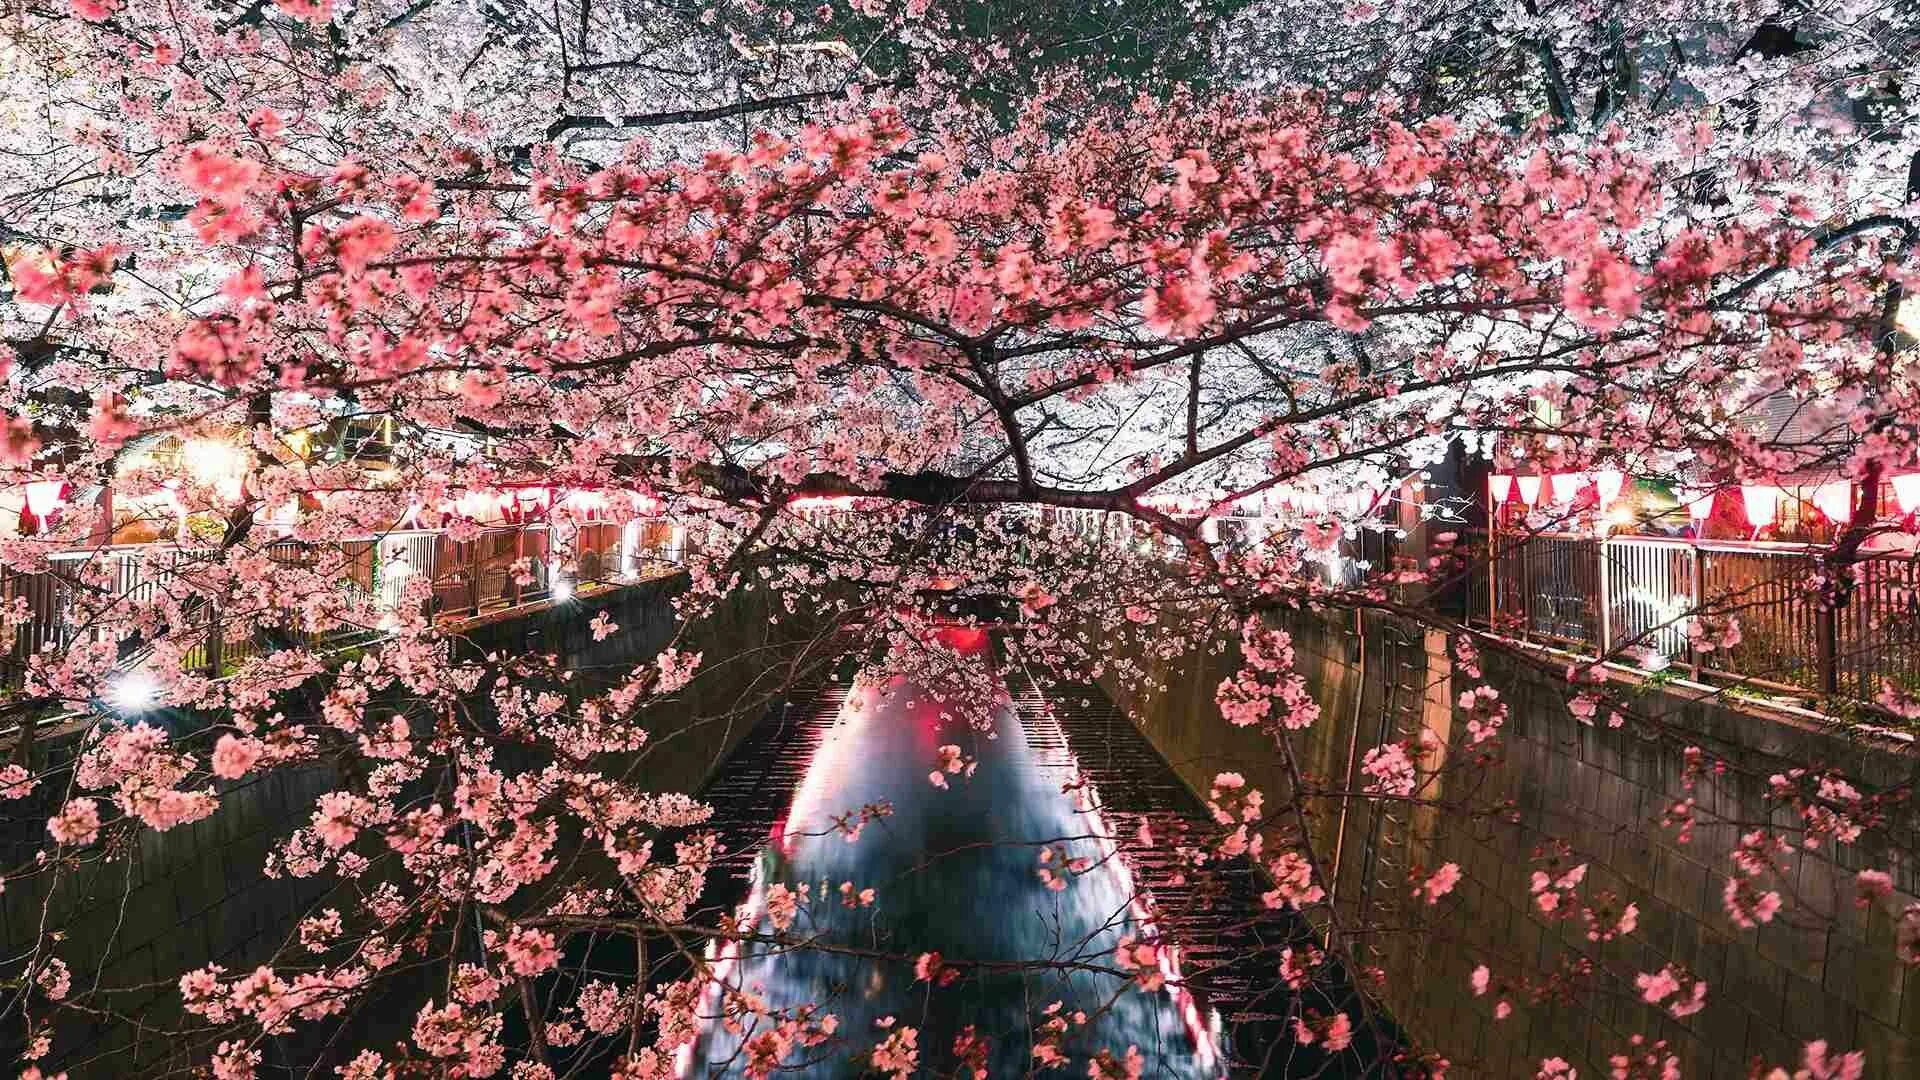 Сакура жизни. Сакура кустовая "Ханами". Япония Токио Сакура. Праздник цветения вишни Сакуры. Праздник цветения вишни Сакуры в Японии.